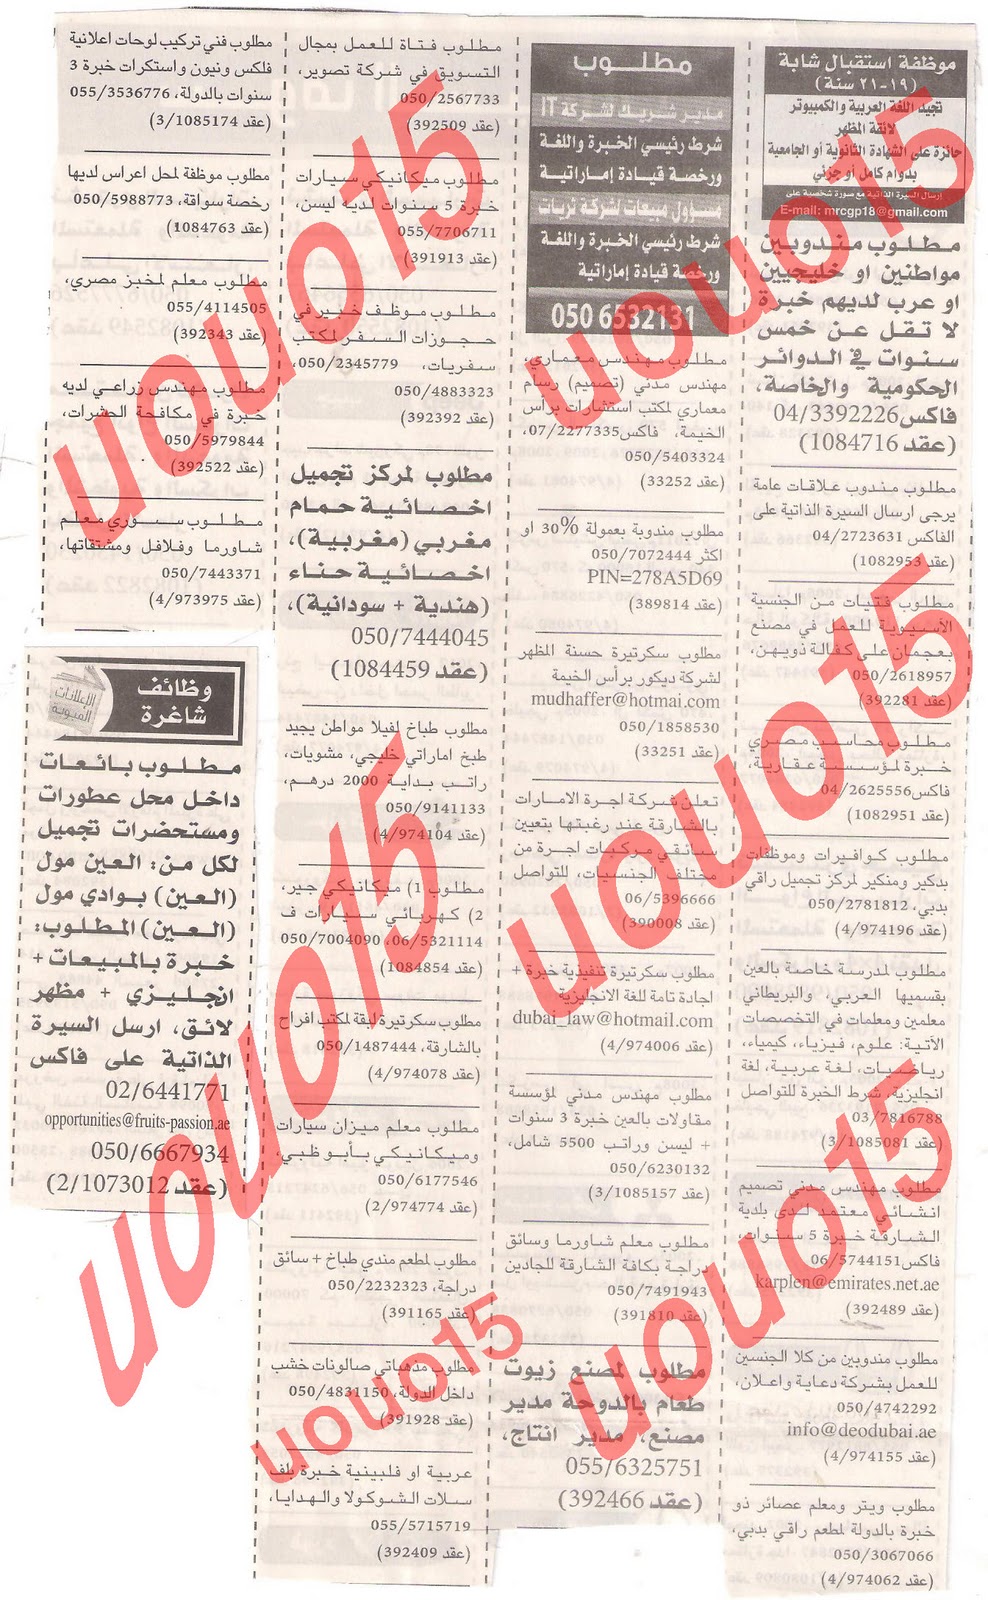 وظائف شاغرة من جريدة الخليج الخميس 15\12\2011  Picture